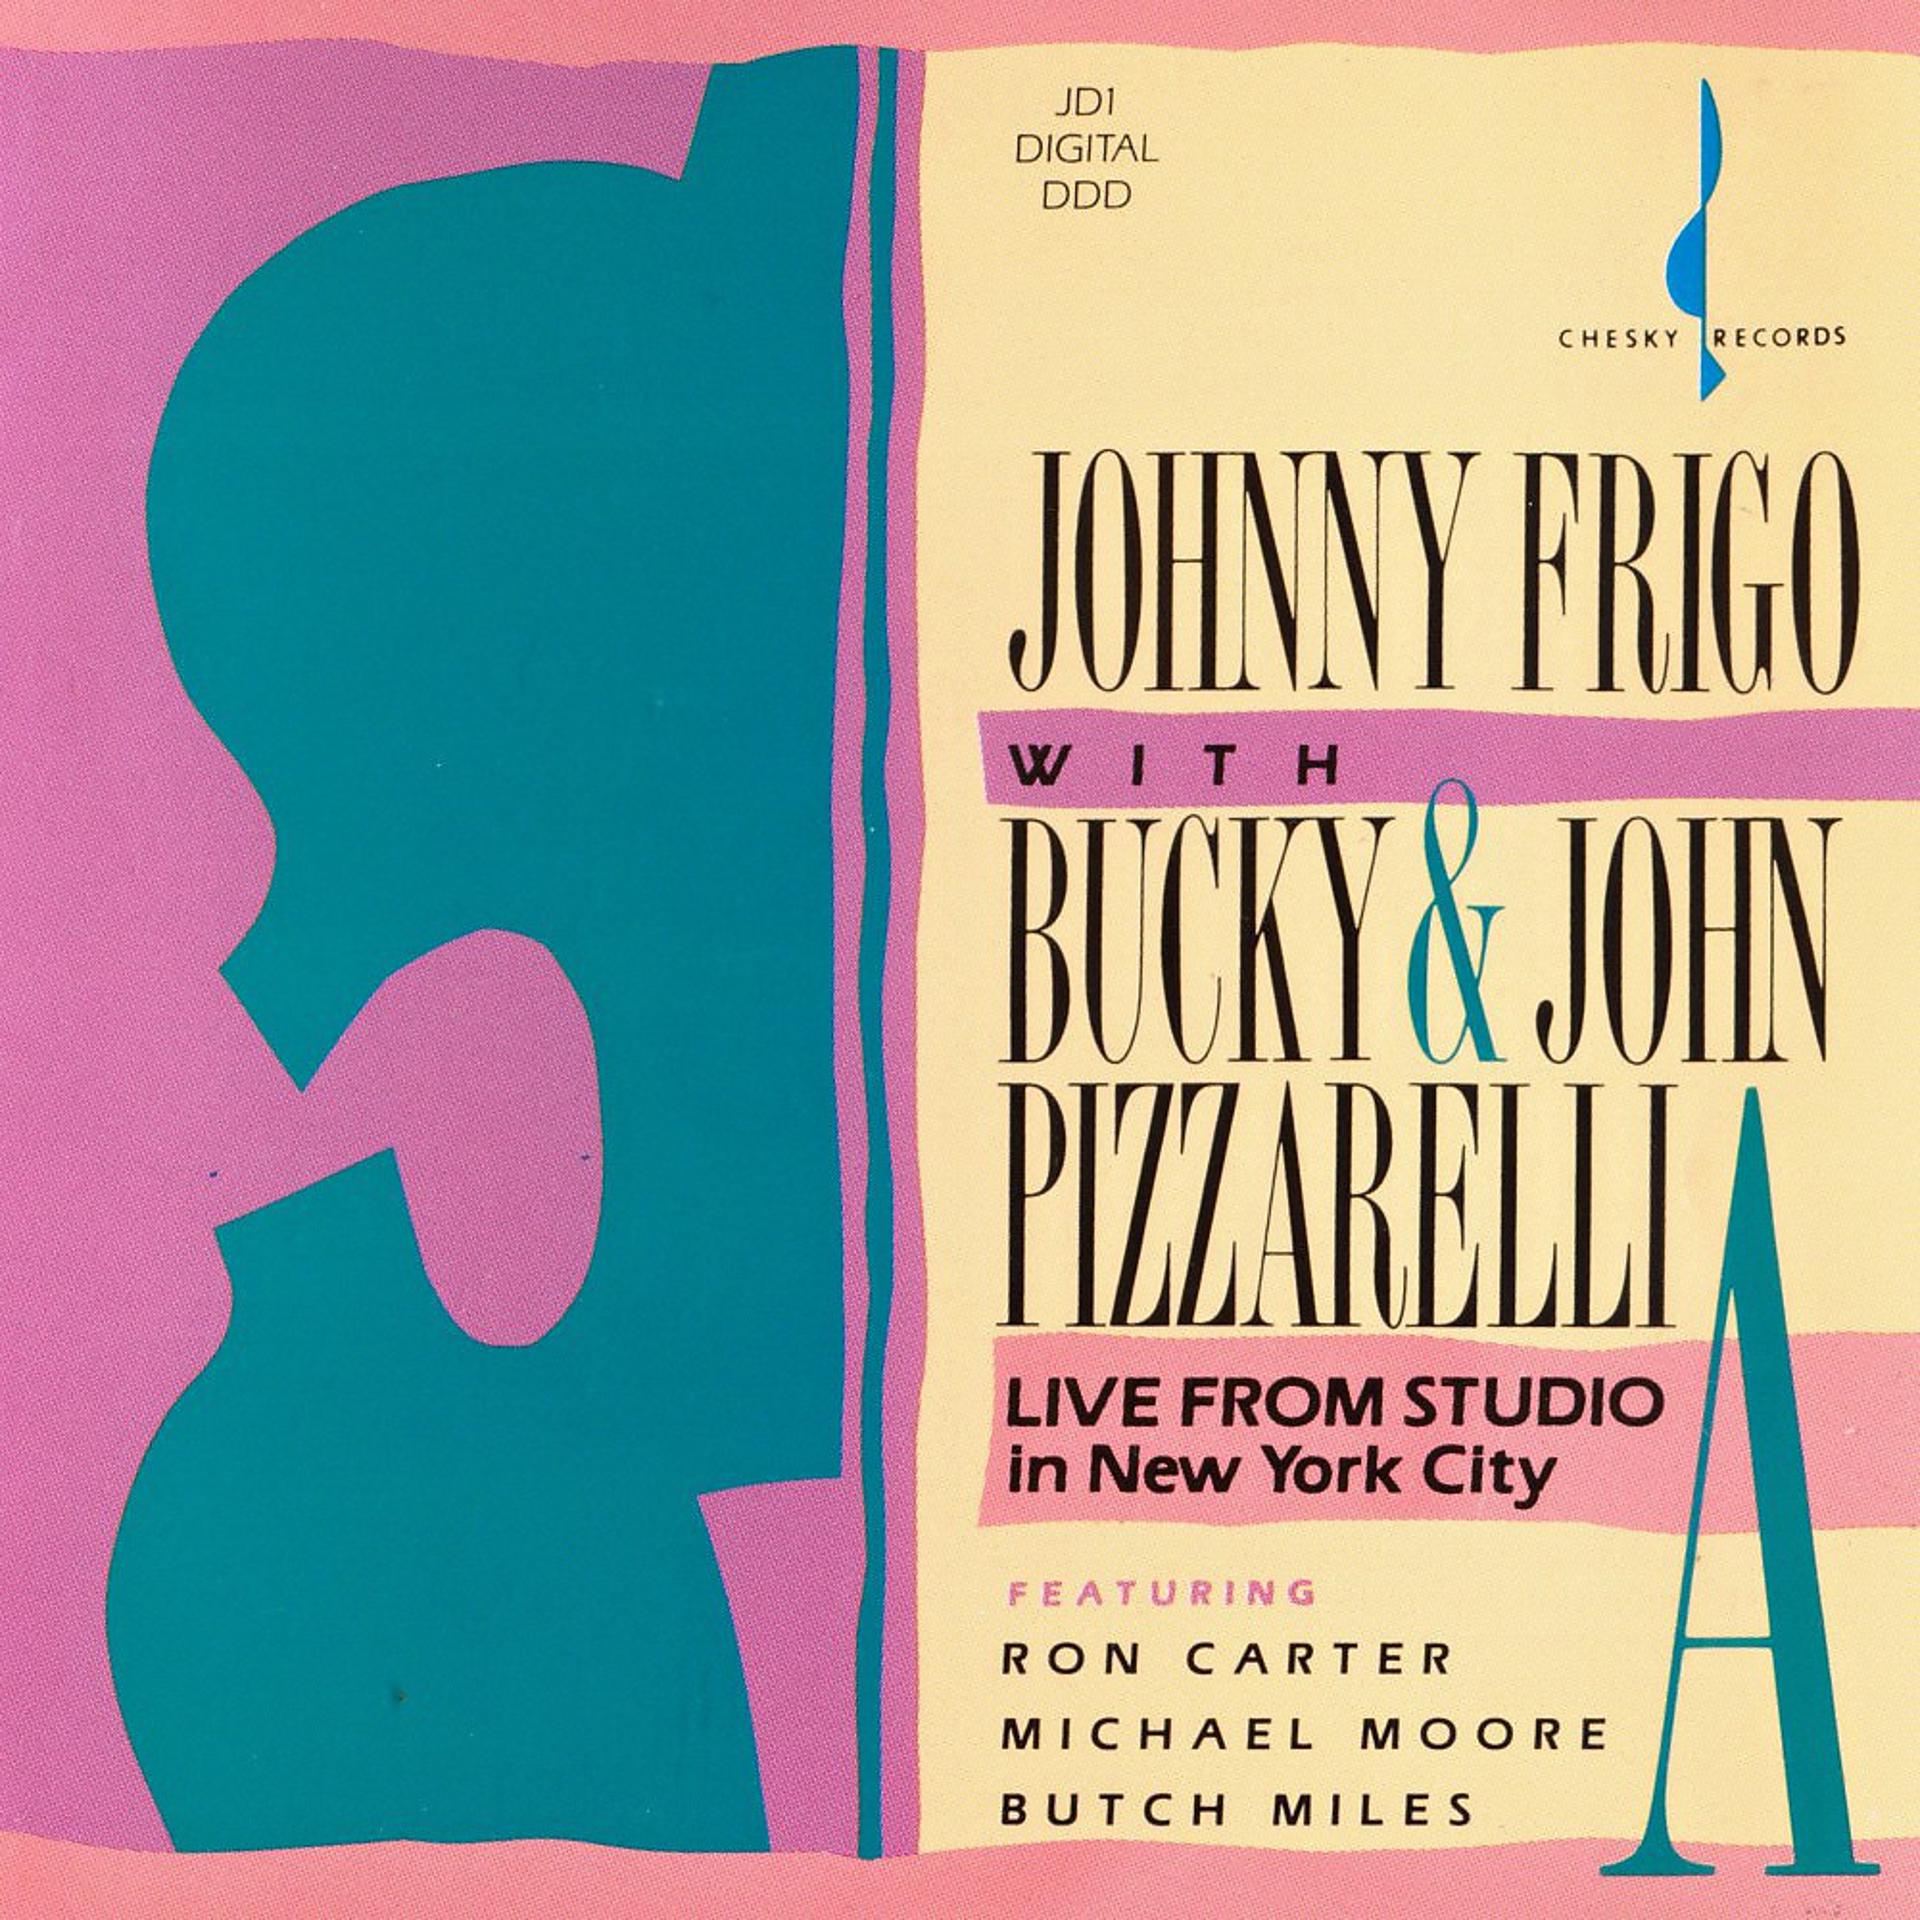 Johnny Frigo feat. Bucky Pizaarelli & John Pizzarelli - фото